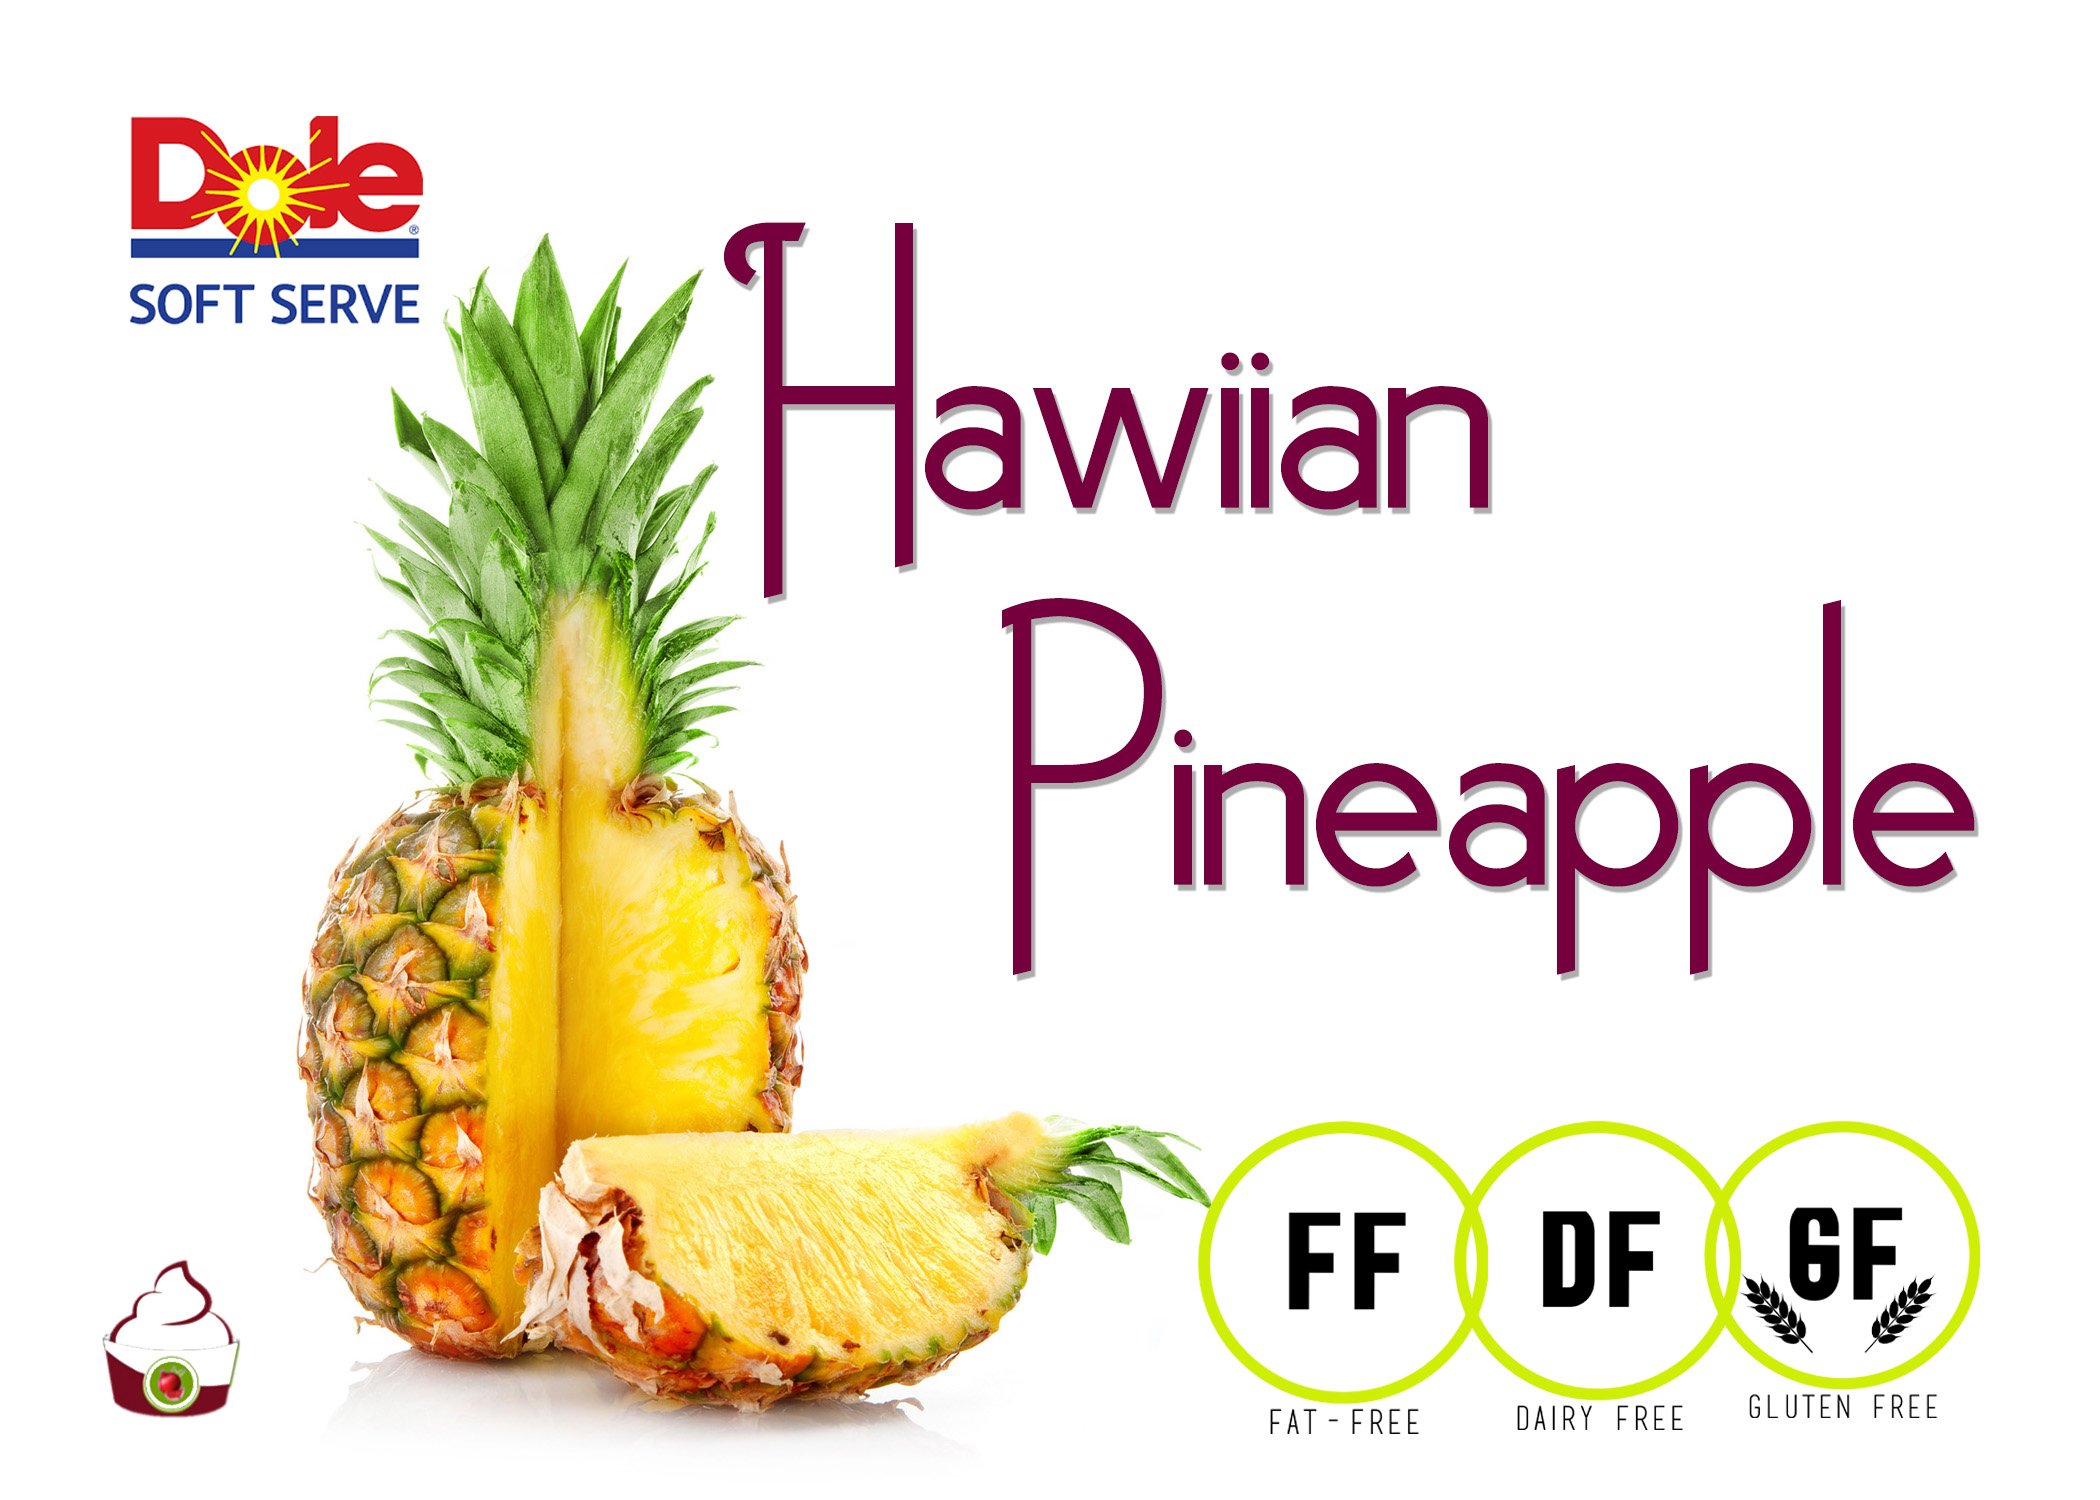 hawiian pineapple.jpg